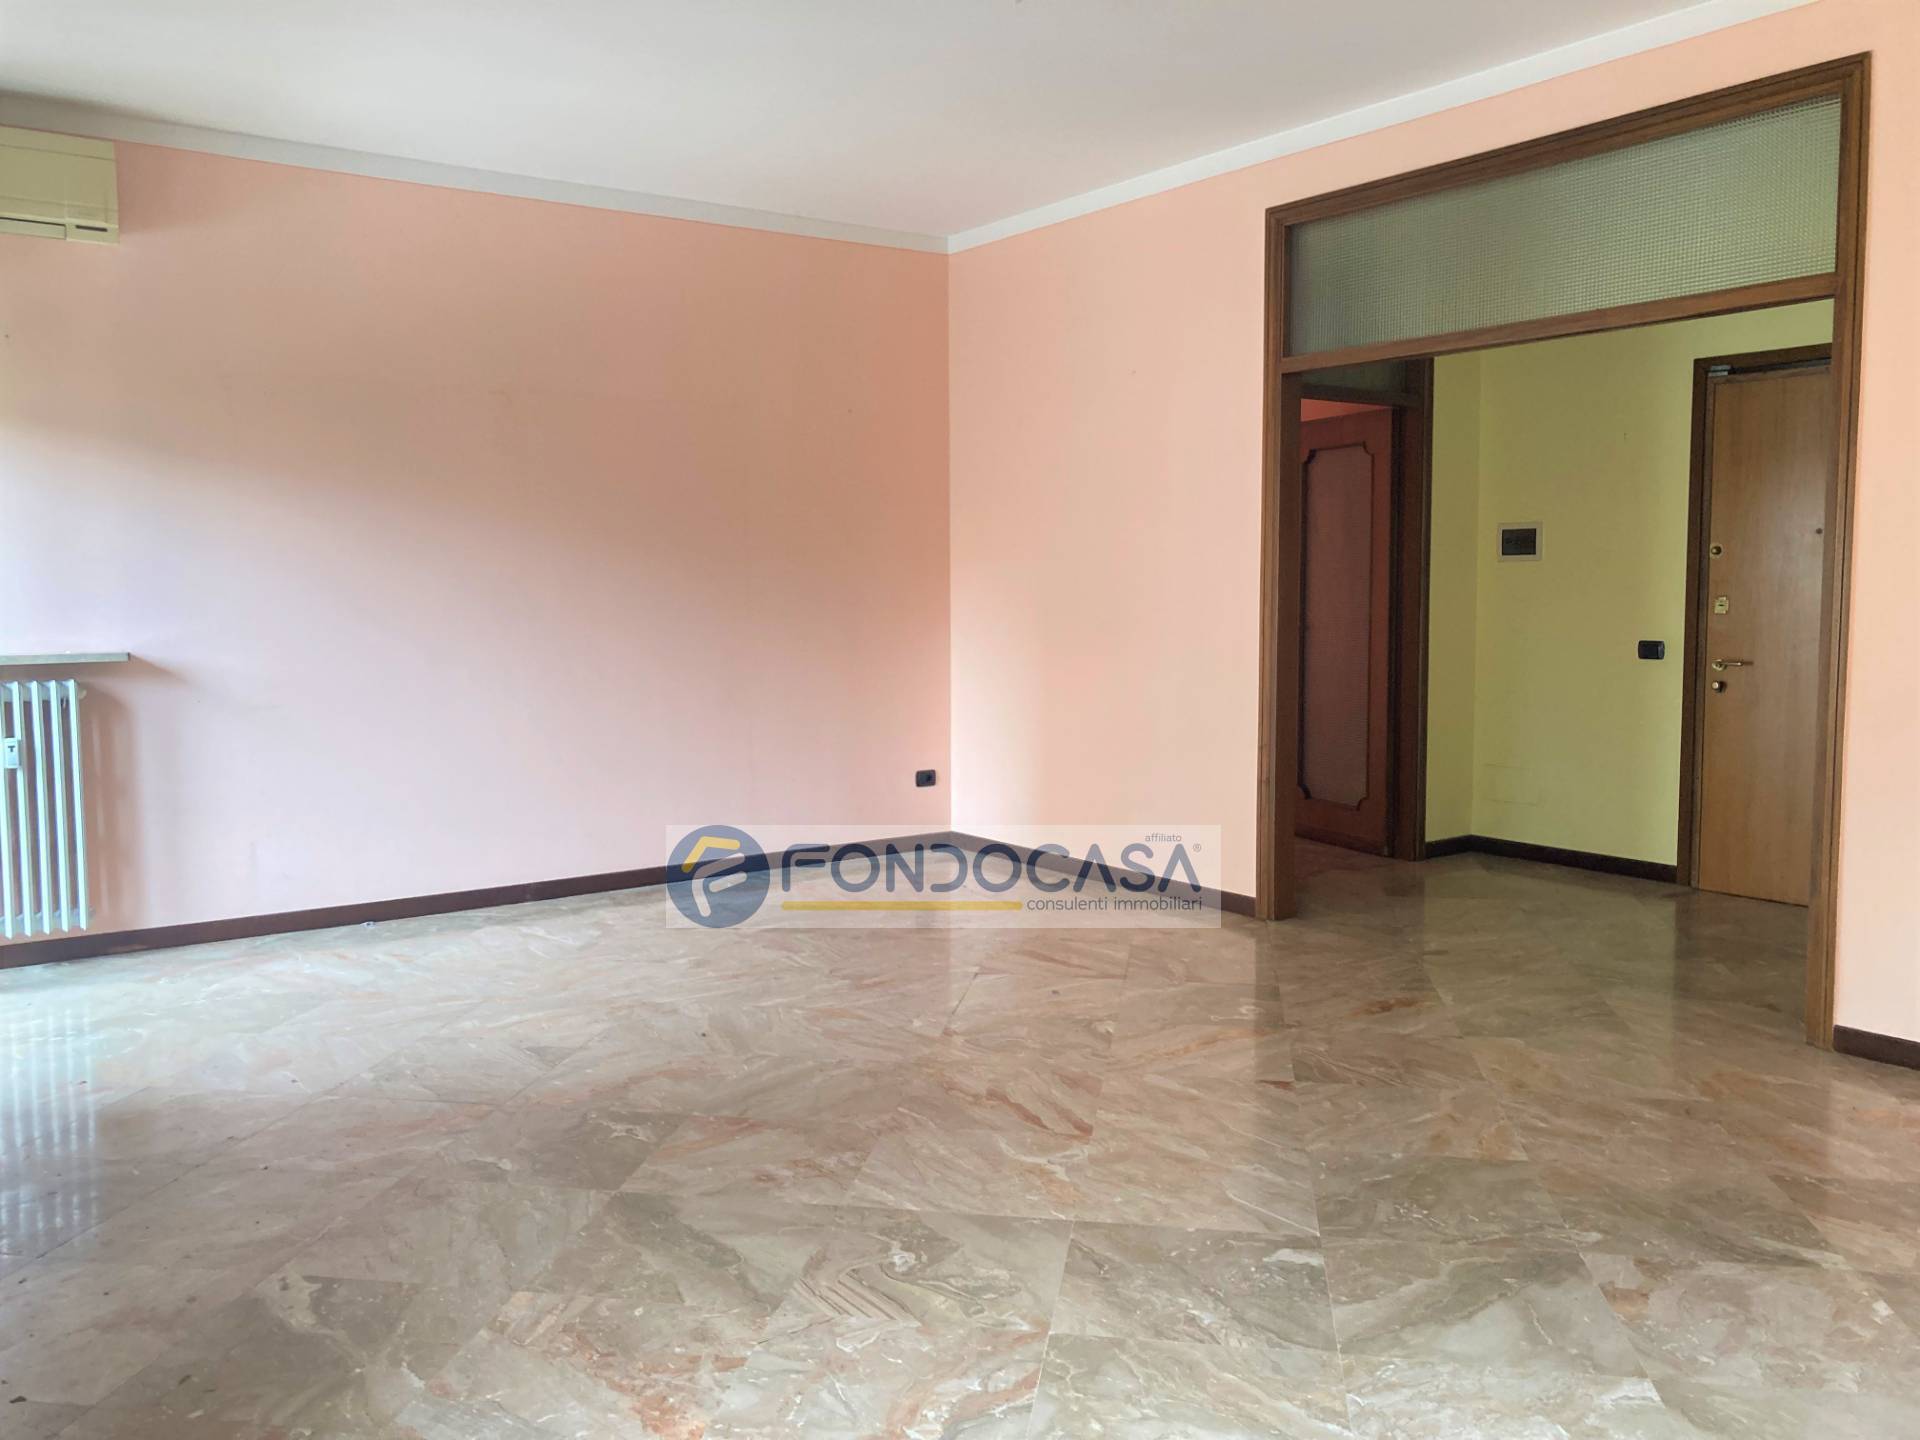 Appartamento in vendita a Brescia, 4 locali, zona Località: BresciaDue, prezzo € 295.000 | PortaleAgenzieImmobiliari.it